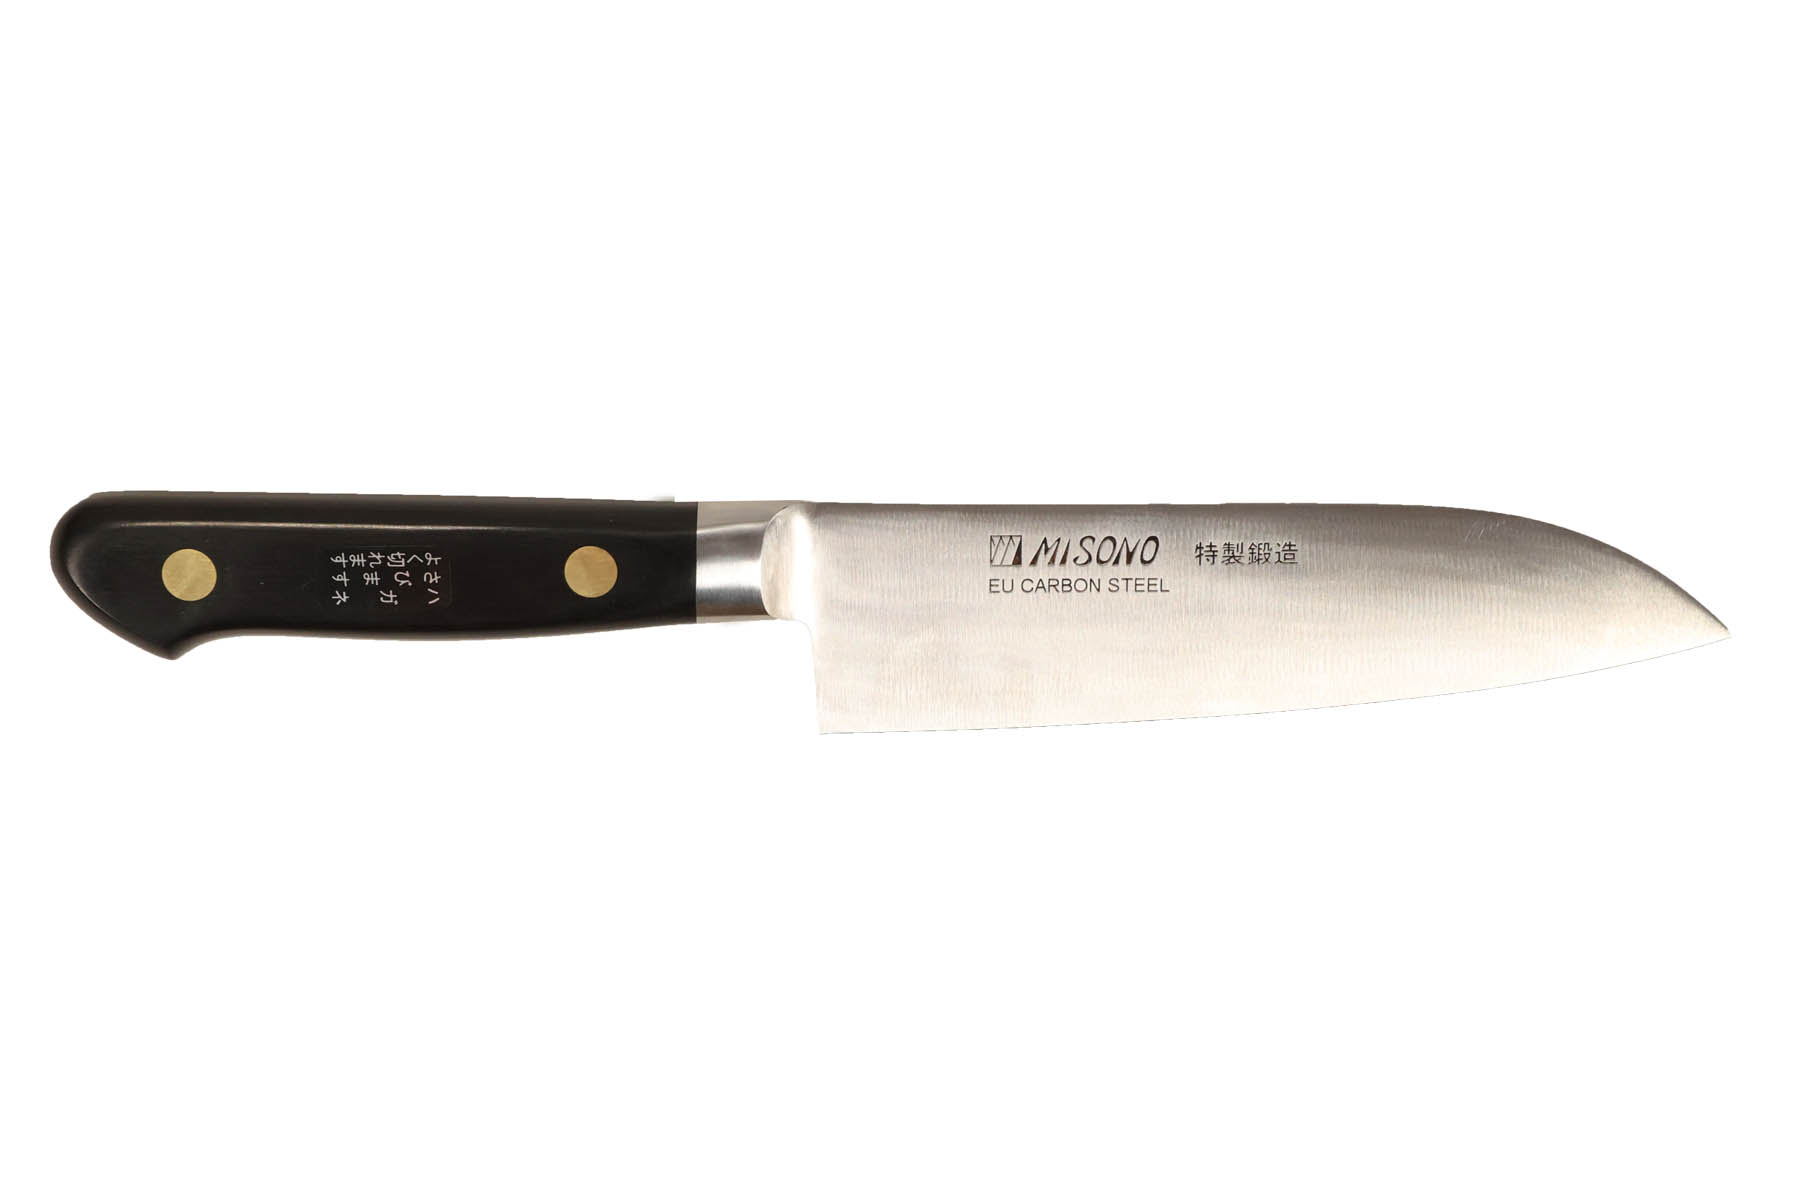 Couteau japonais Misono Swedish Carbon Steel - Couteau santoku 14 cm